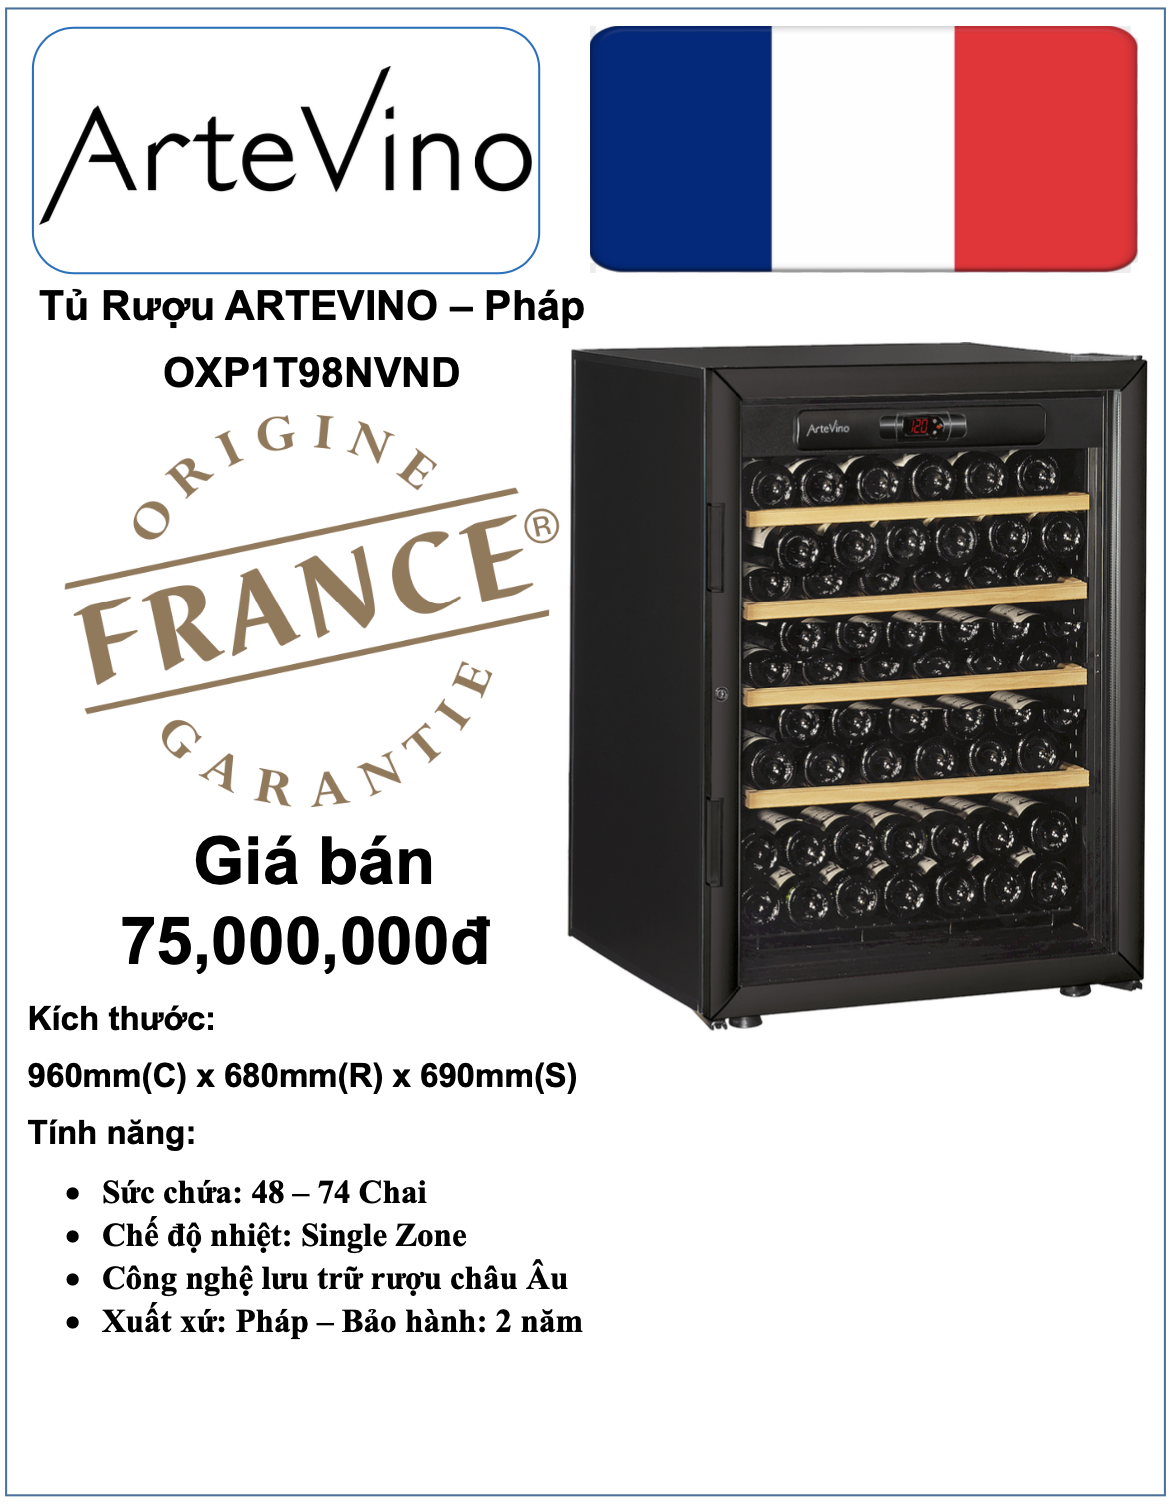 Tủ Rượu Pháp ARTEVINO - Model: OXP1T98NVND